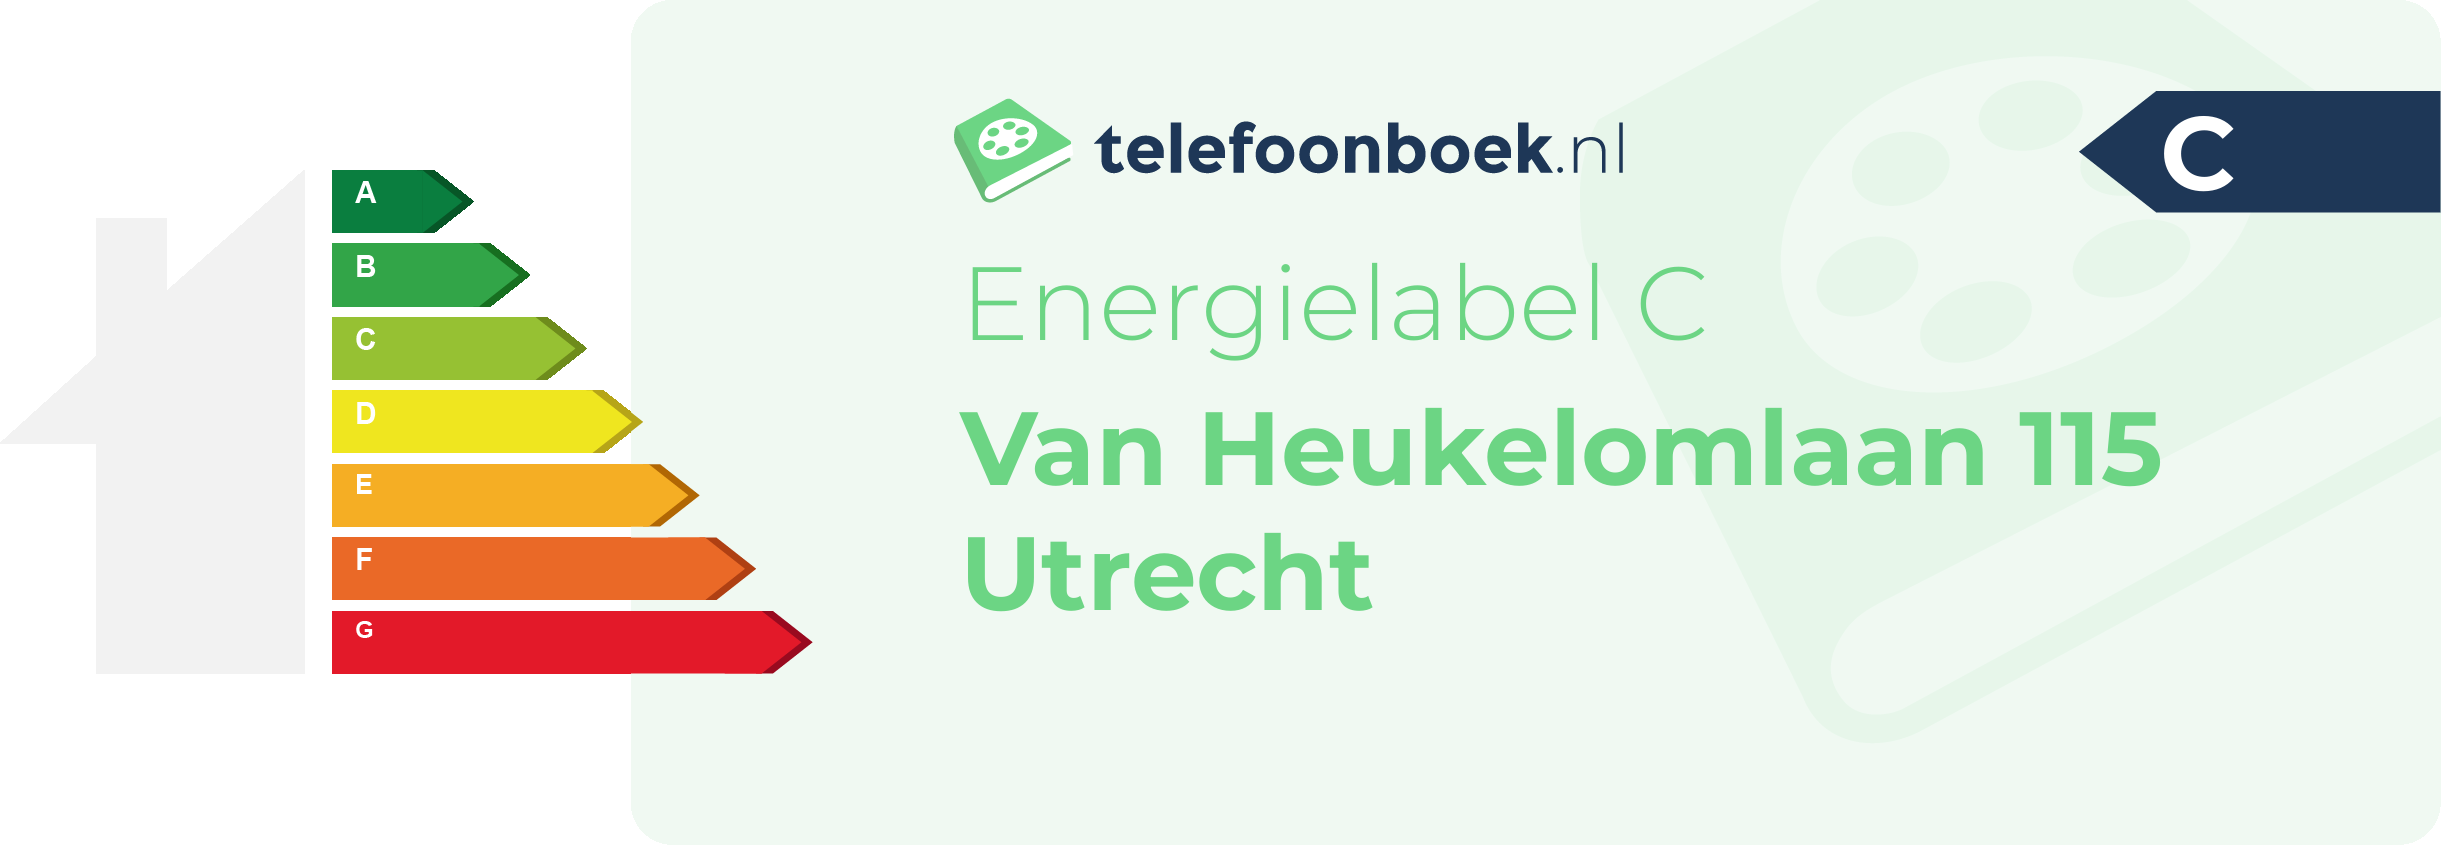 Energielabel Van Heukelomlaan 115 Utrecht